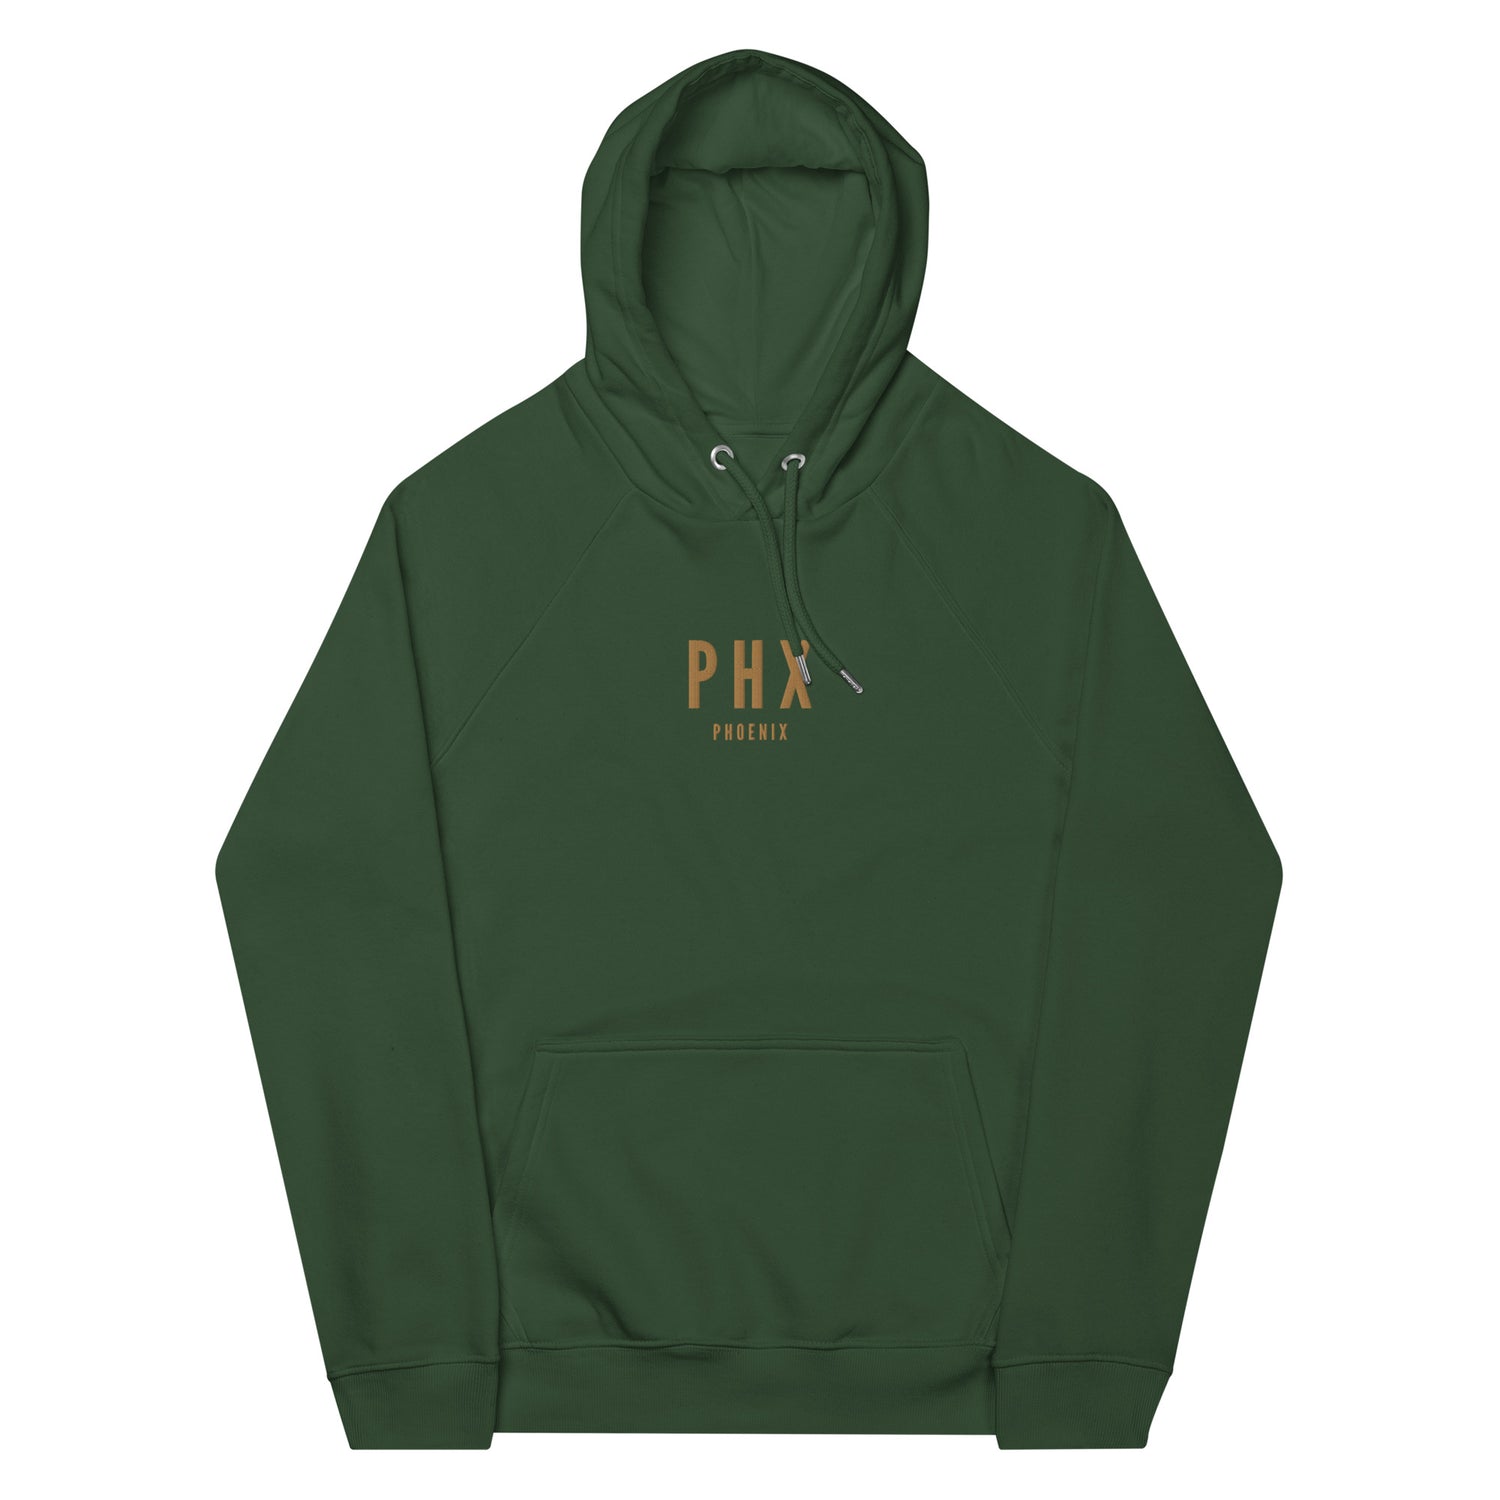 Phoenix Arizona Hoodies and Sweatshirts • PHX Airport Code